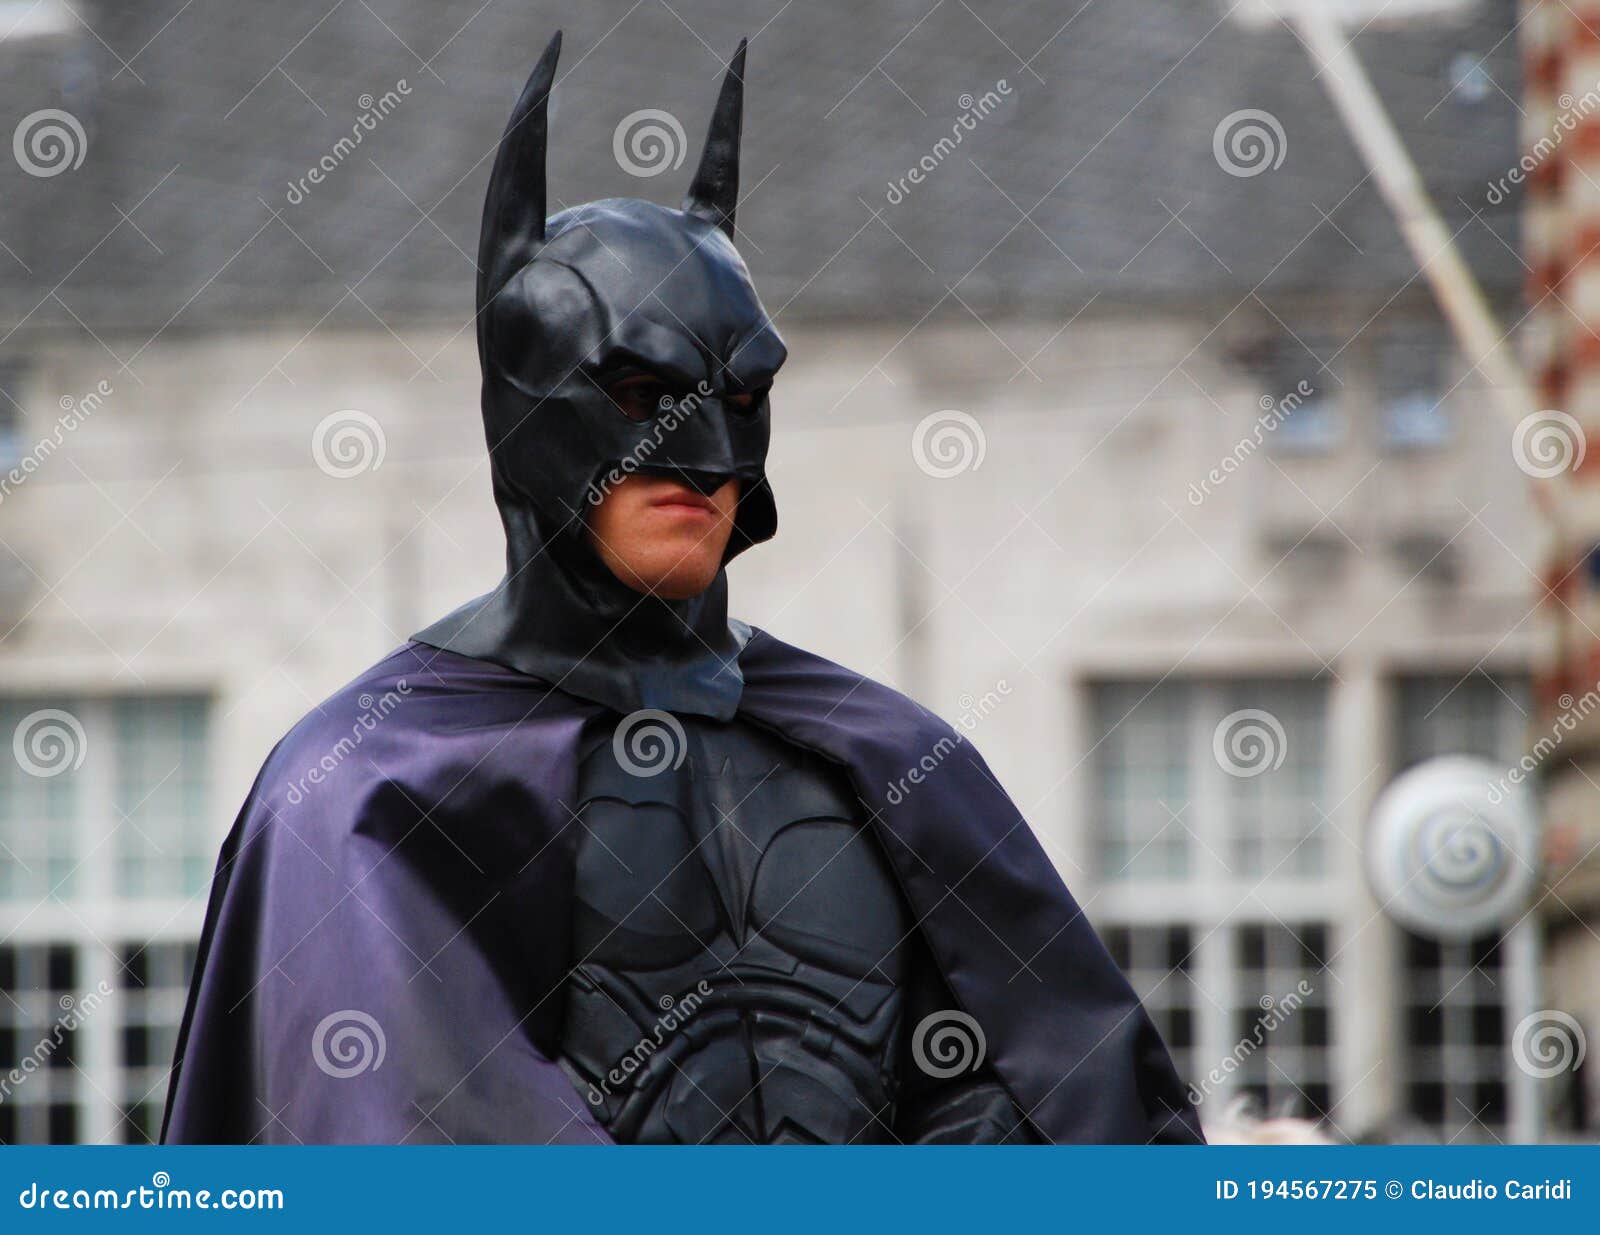 Actor Disfrazado De Batman En La Plaza Central De La Presa De Amsterdam.  Imagen editorial - Imagen de cubo, hombre: 194567275